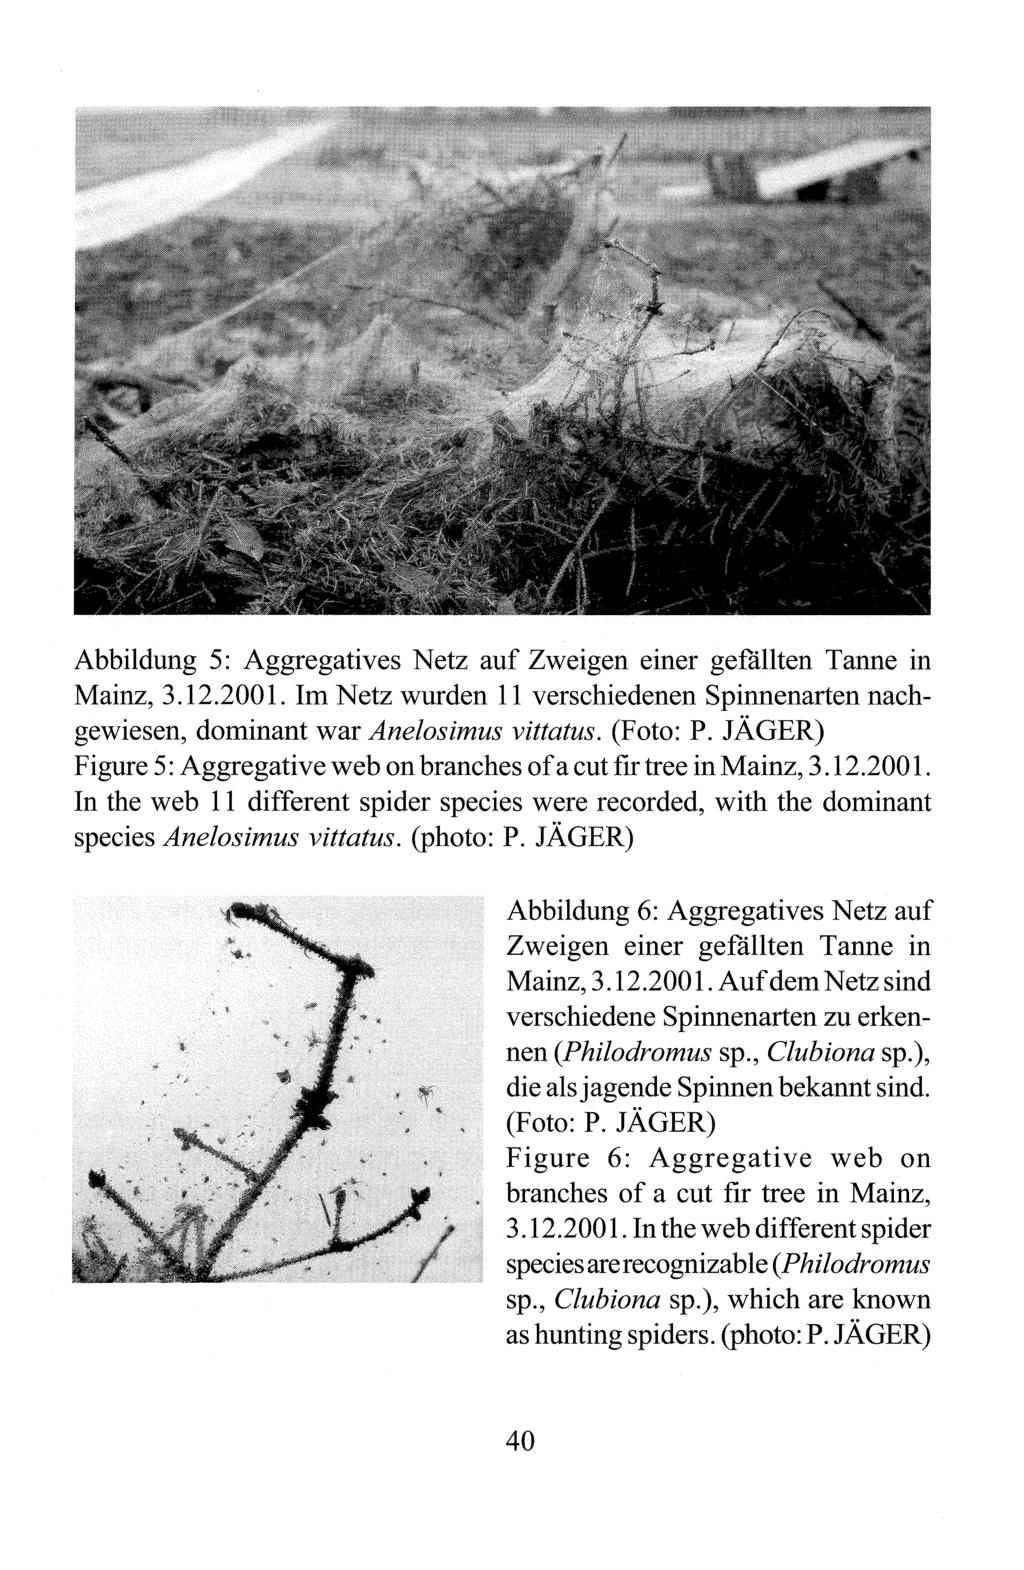 Abbildung 5: Aggregatives Netz auf Zweigen einer gefallten Tanne in Mainz, 3.12.2001. Im Netz wurden 11 verschiedenen Spinnenarten nachgewiesen, dominant war Anelosimus vittatus. (Foto: P.